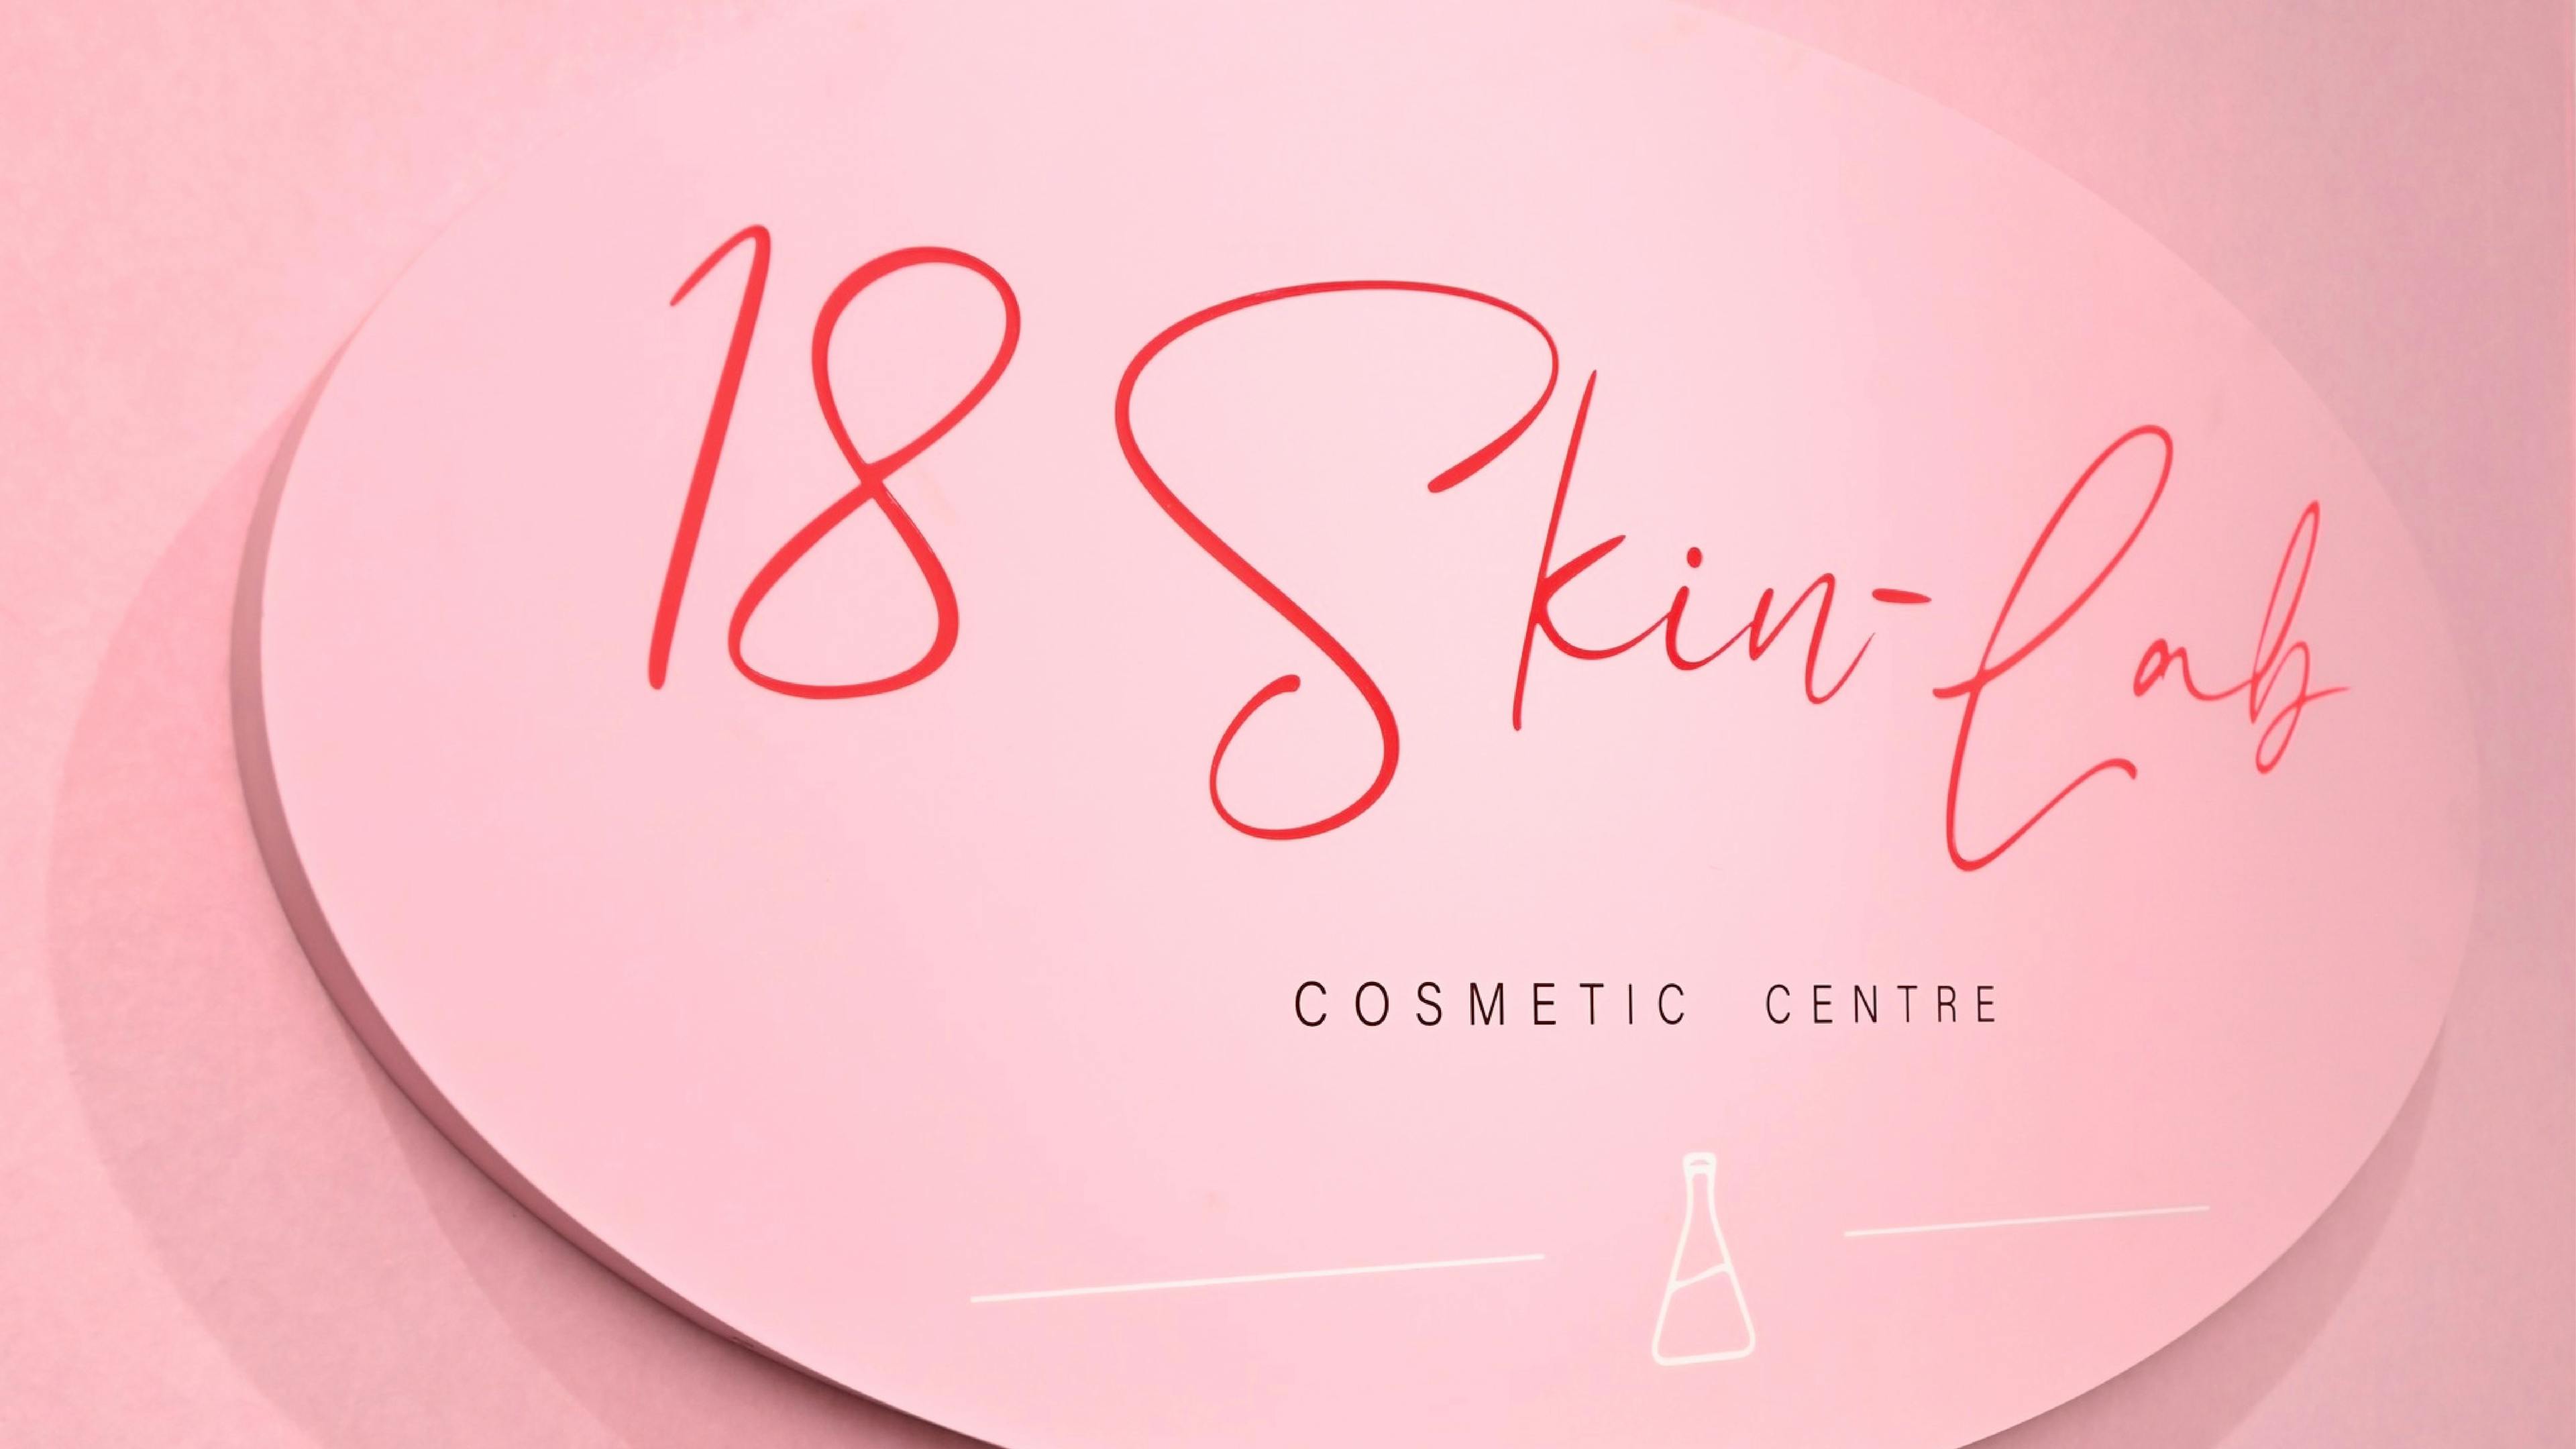 18 Skin-Lab Cosmetic